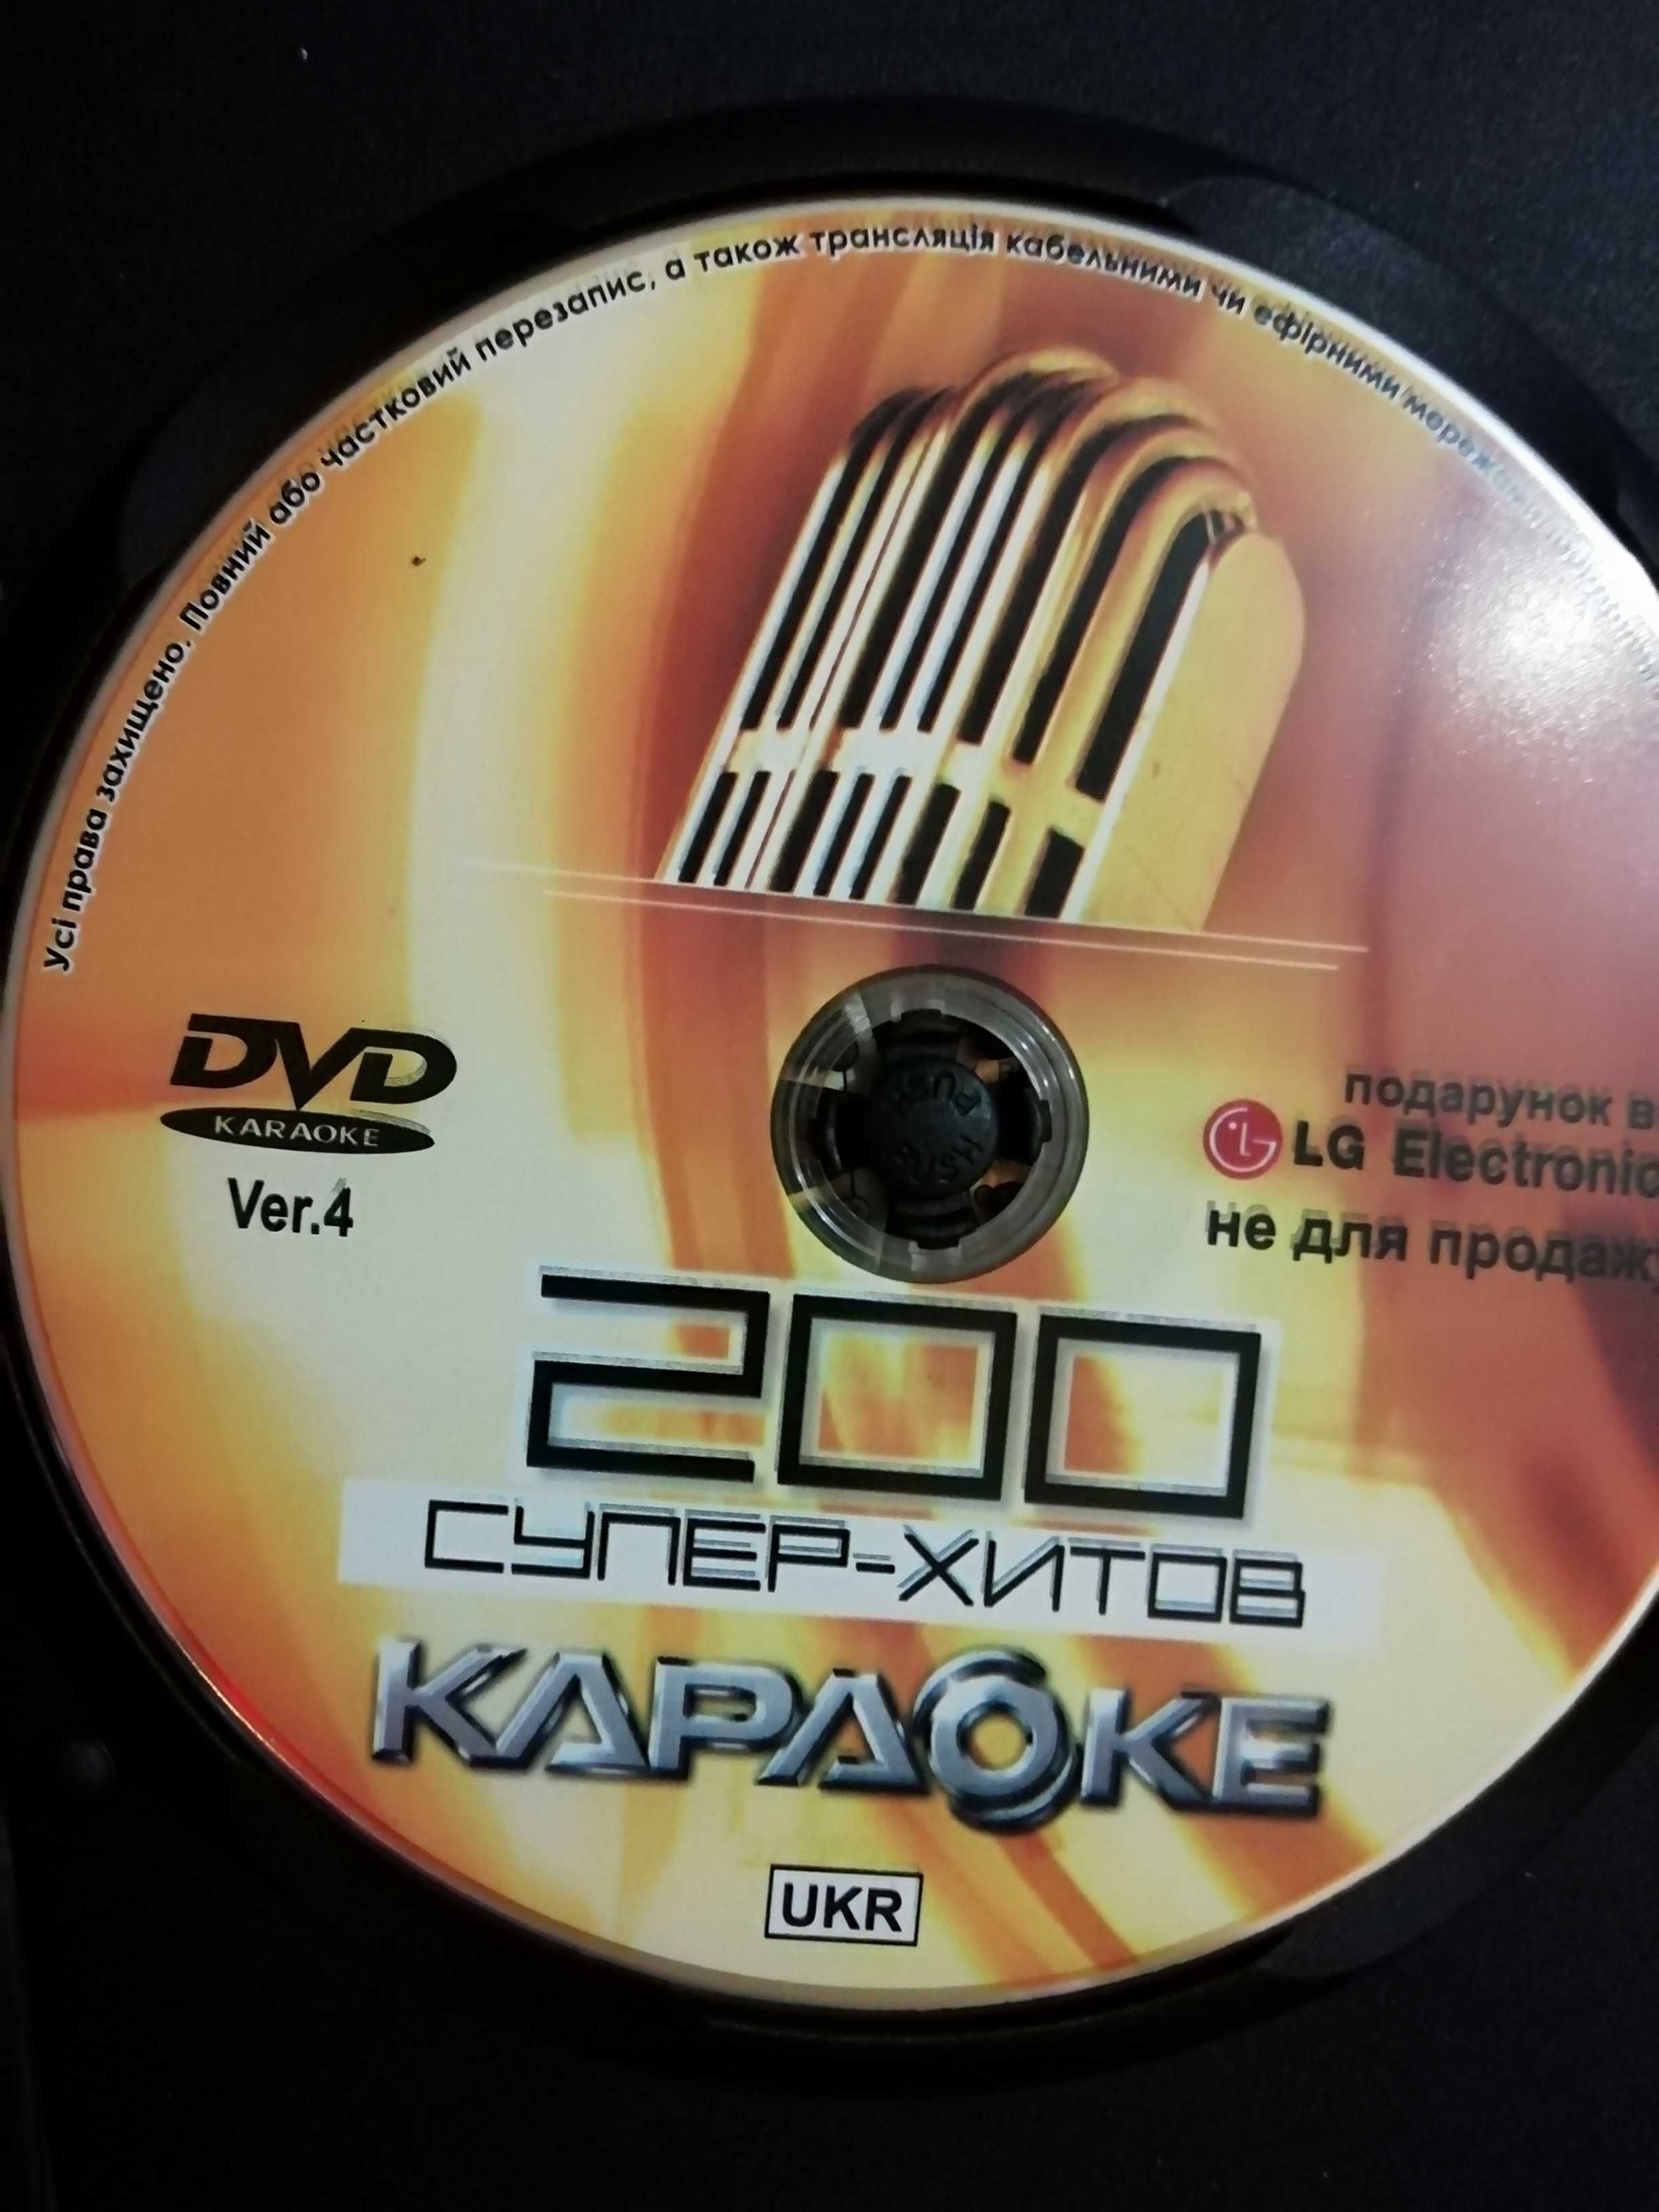 Караоке диск LG 200 песен версия 4 DVD Видео 2006г